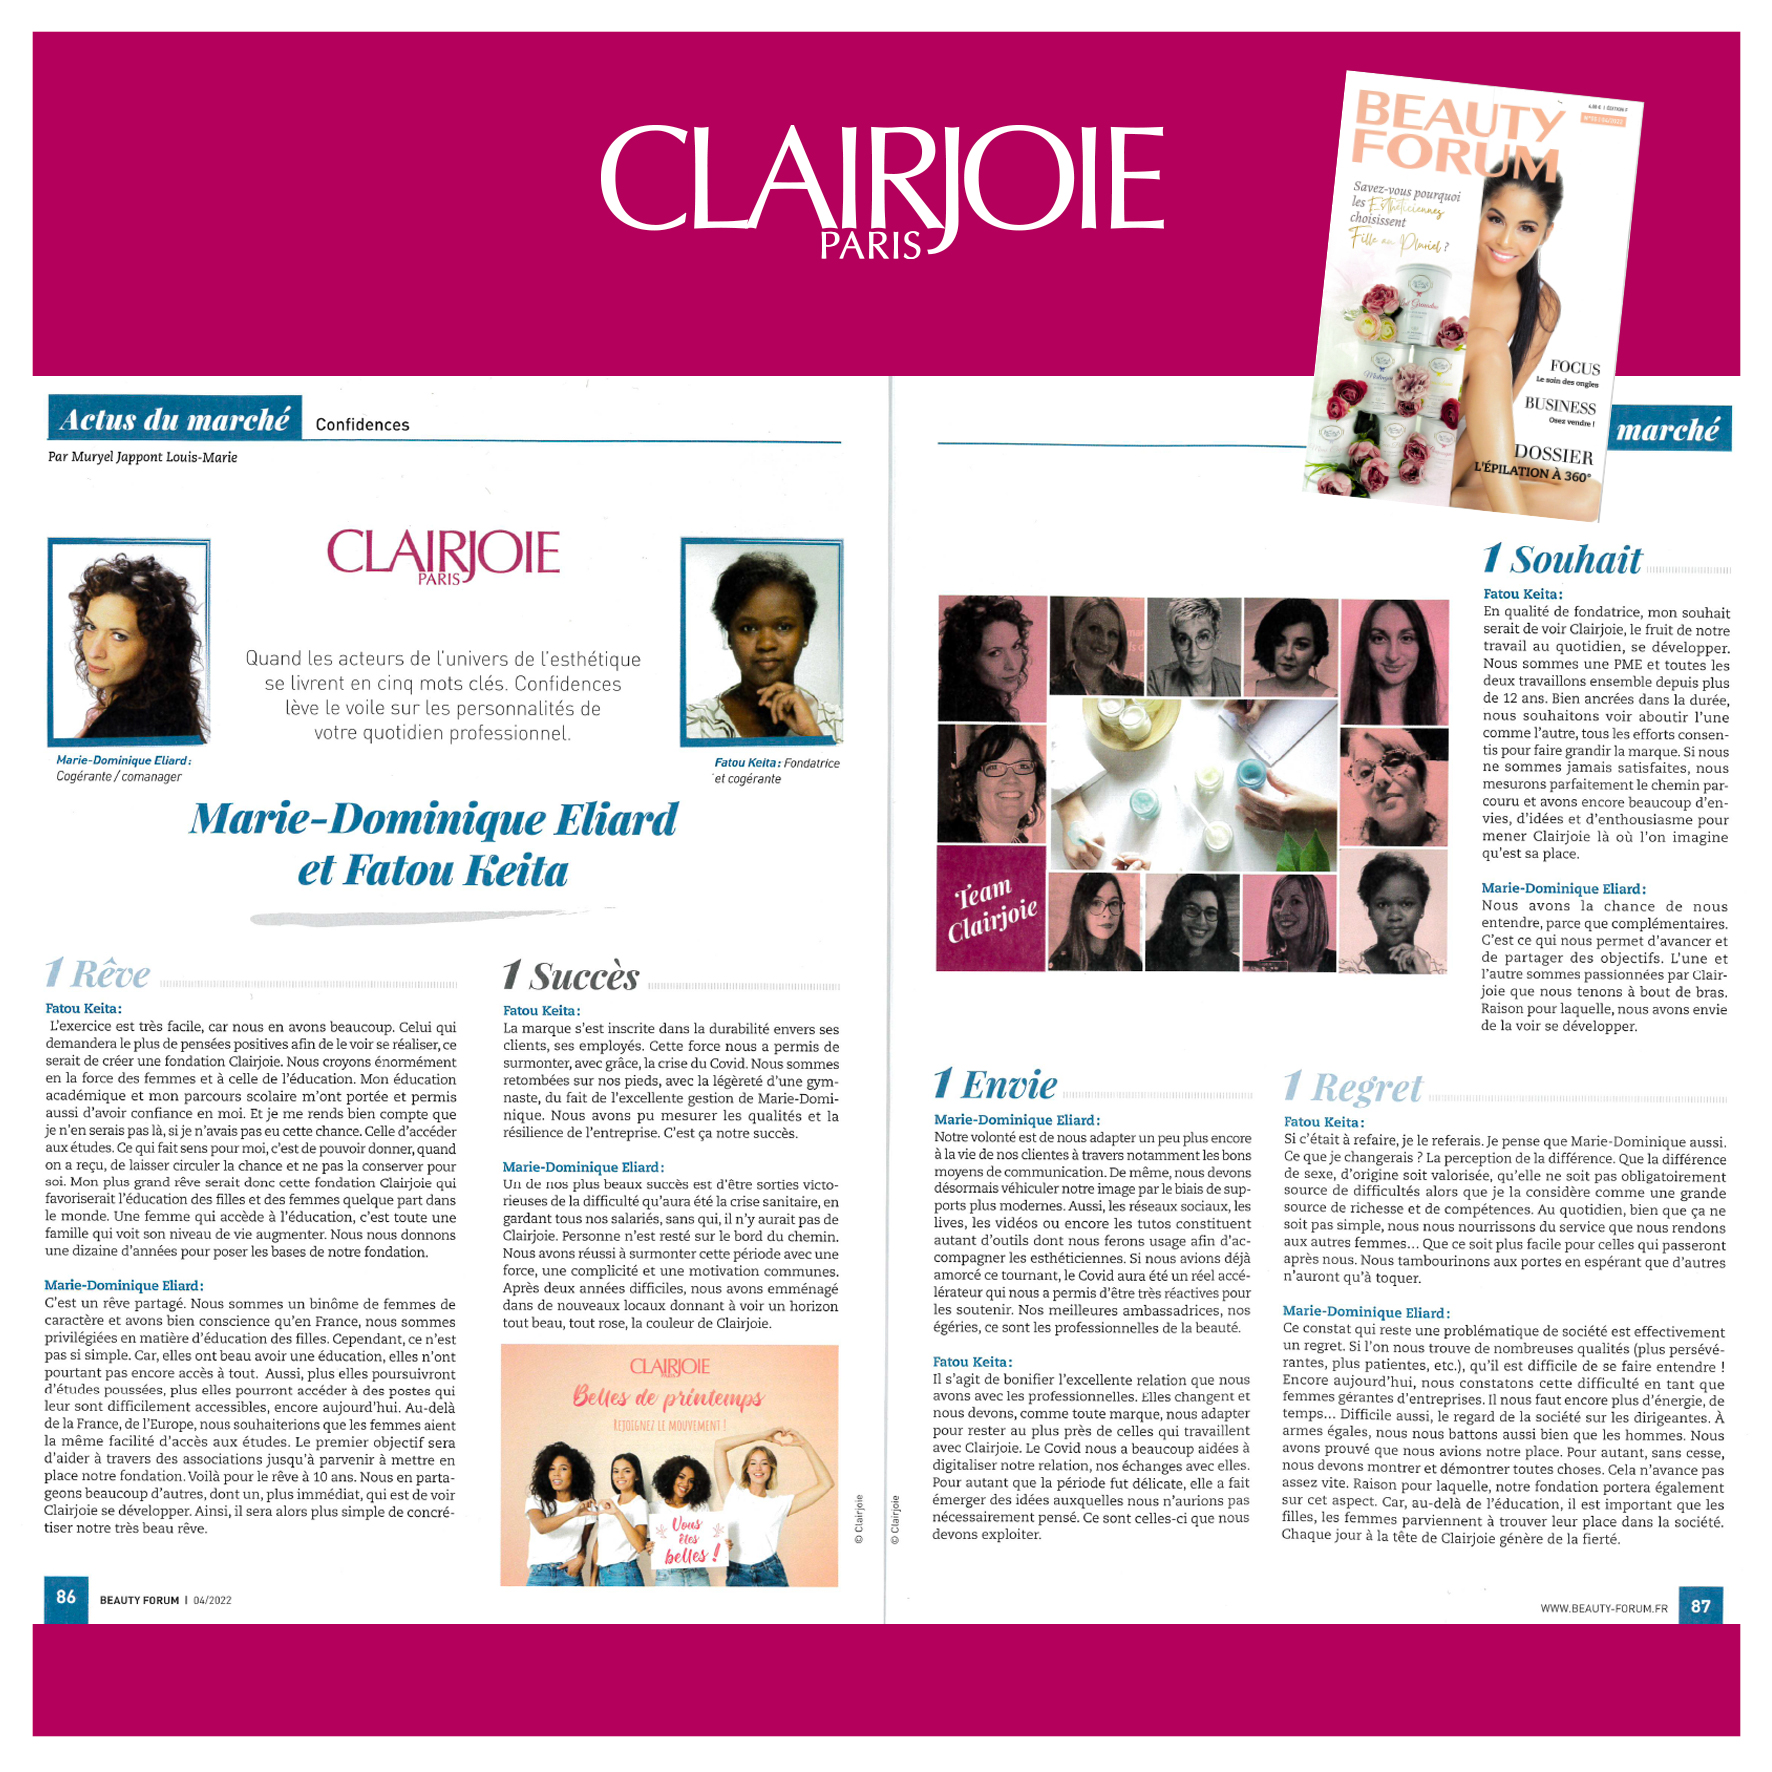 Beauty Forum Clairjoie se confie